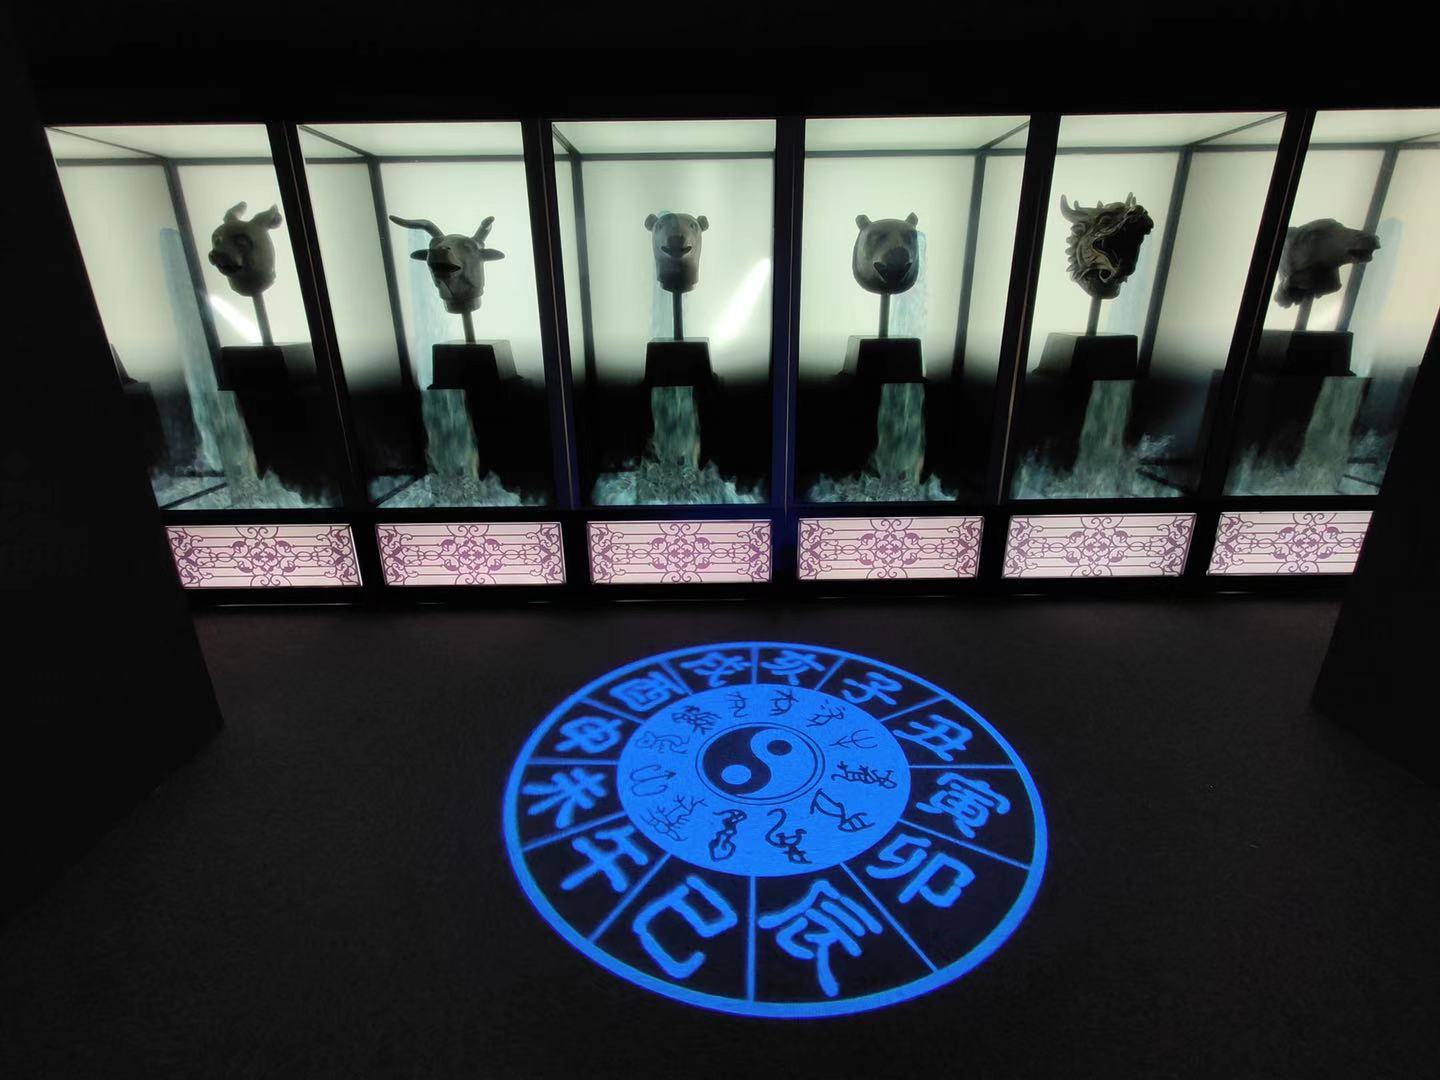 展厅设置了一个多媒体展示十二生肖兽首喷泉景象。摄影/新京报记者 浦峰